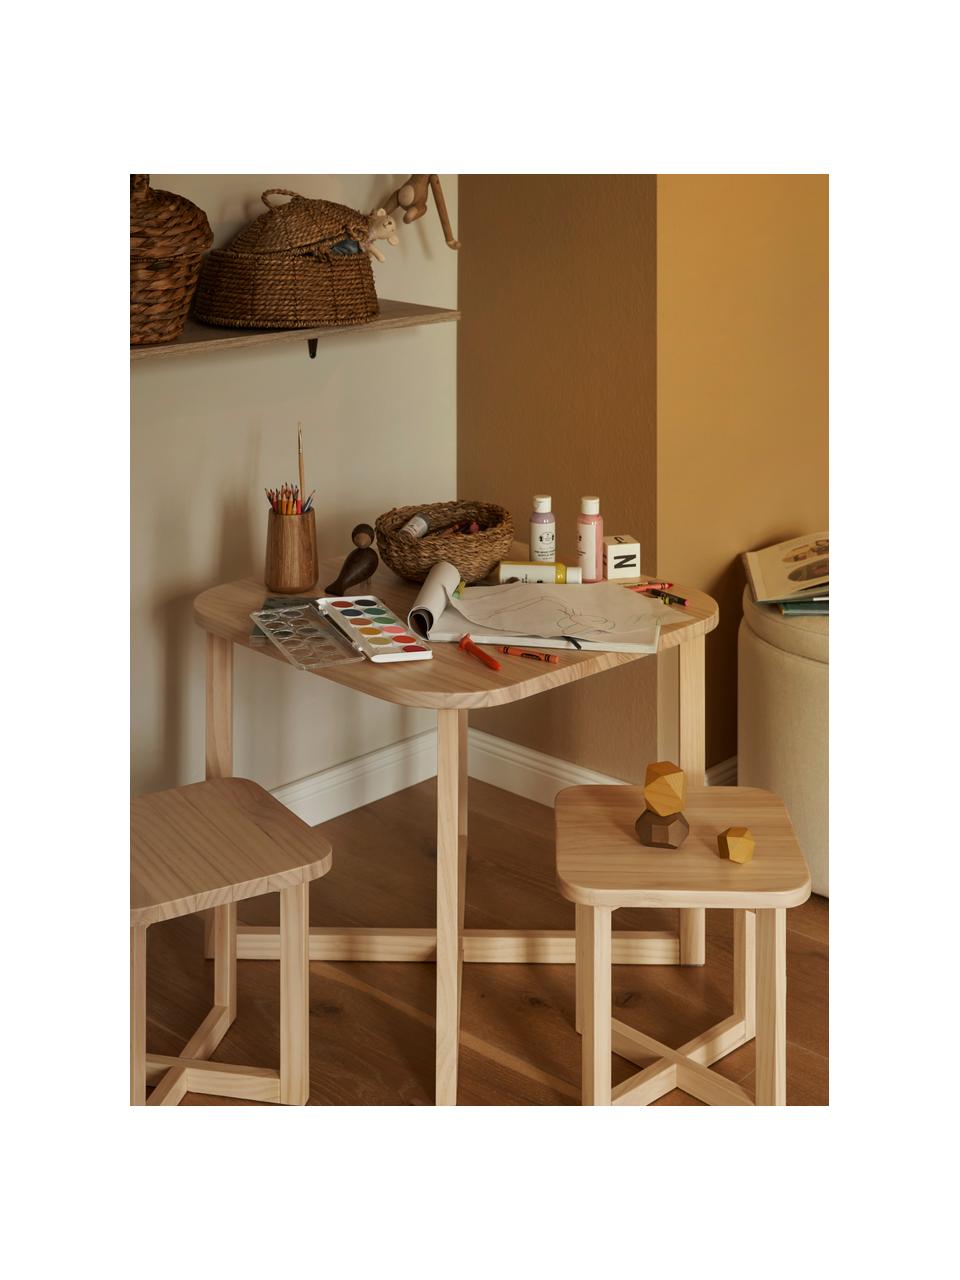 Kindertisch-Set Benny aus Holz, 3er-Set, FSC-zertifiziertes Kiefernholz, Kiefernholz, Set mit verschiedenen Größen